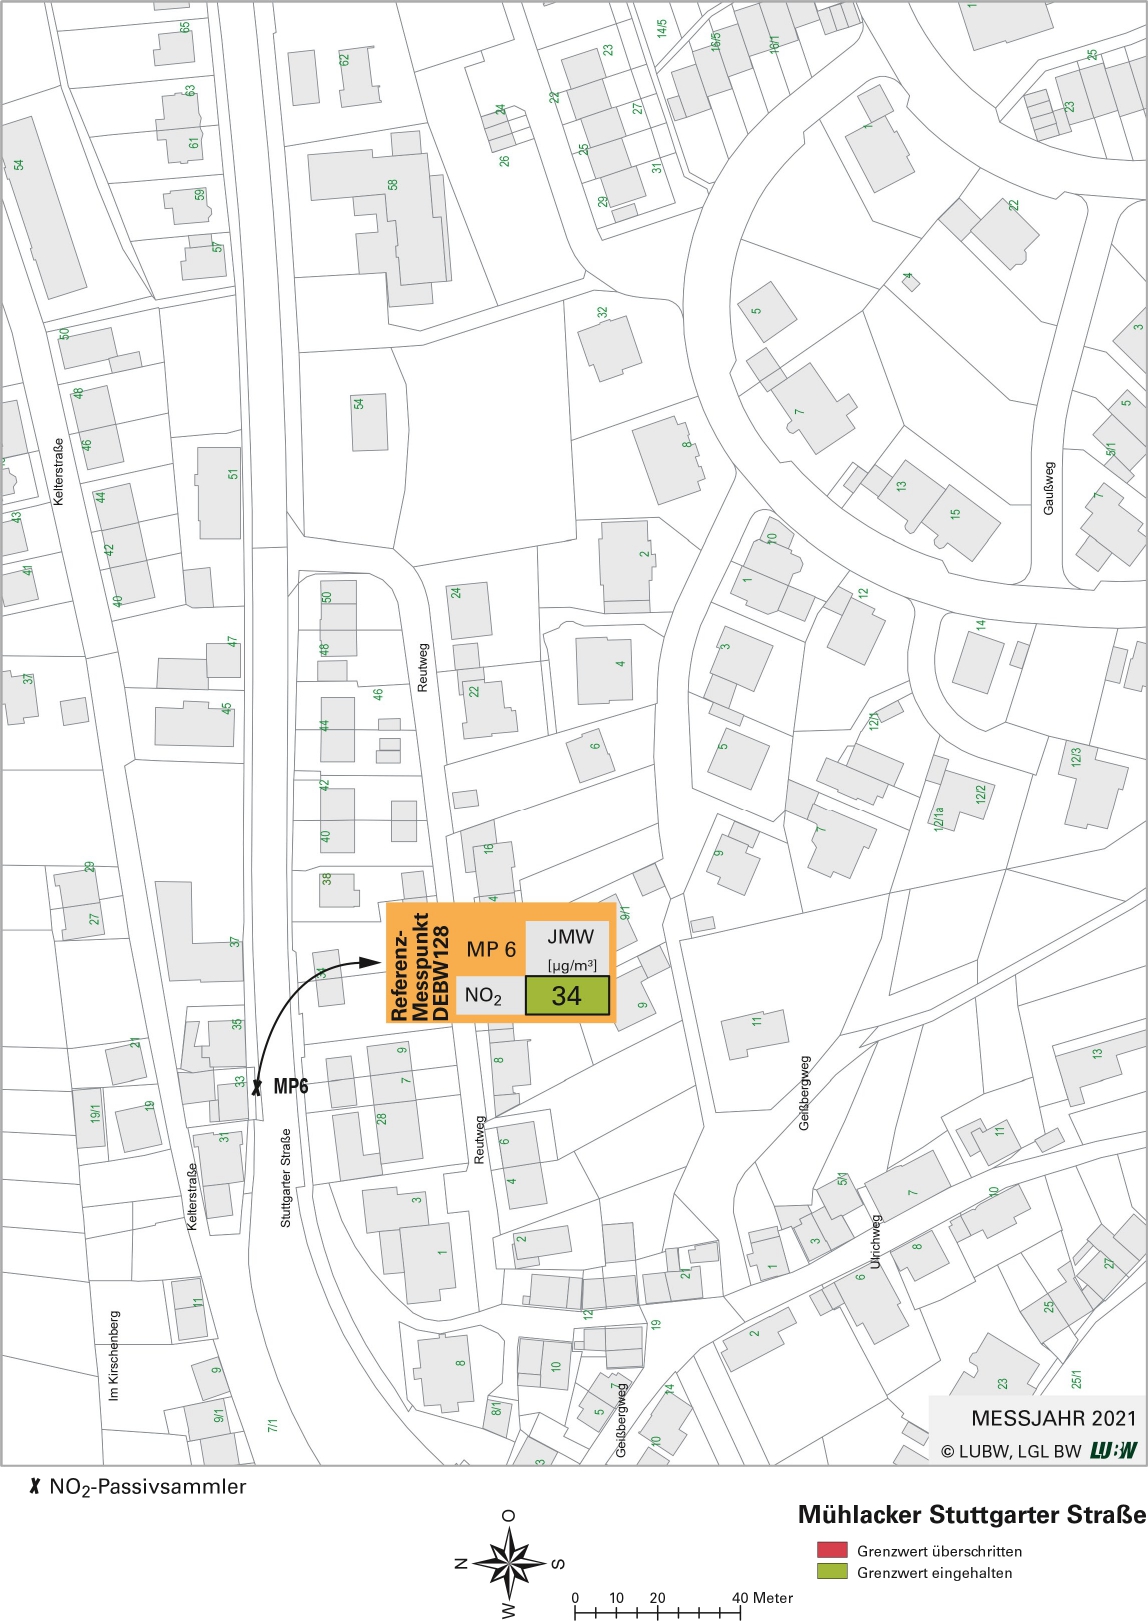 Kartenausschnitt, der die Lage der Messstelle Mühlacker Stuttgarter Straße (Referenzmesspunkt) zeigt. Dargestellt ist zudem das Ergebnis (Jahresmittelwert 2021) der gemessenen Stickstoffdioxidbelastung.